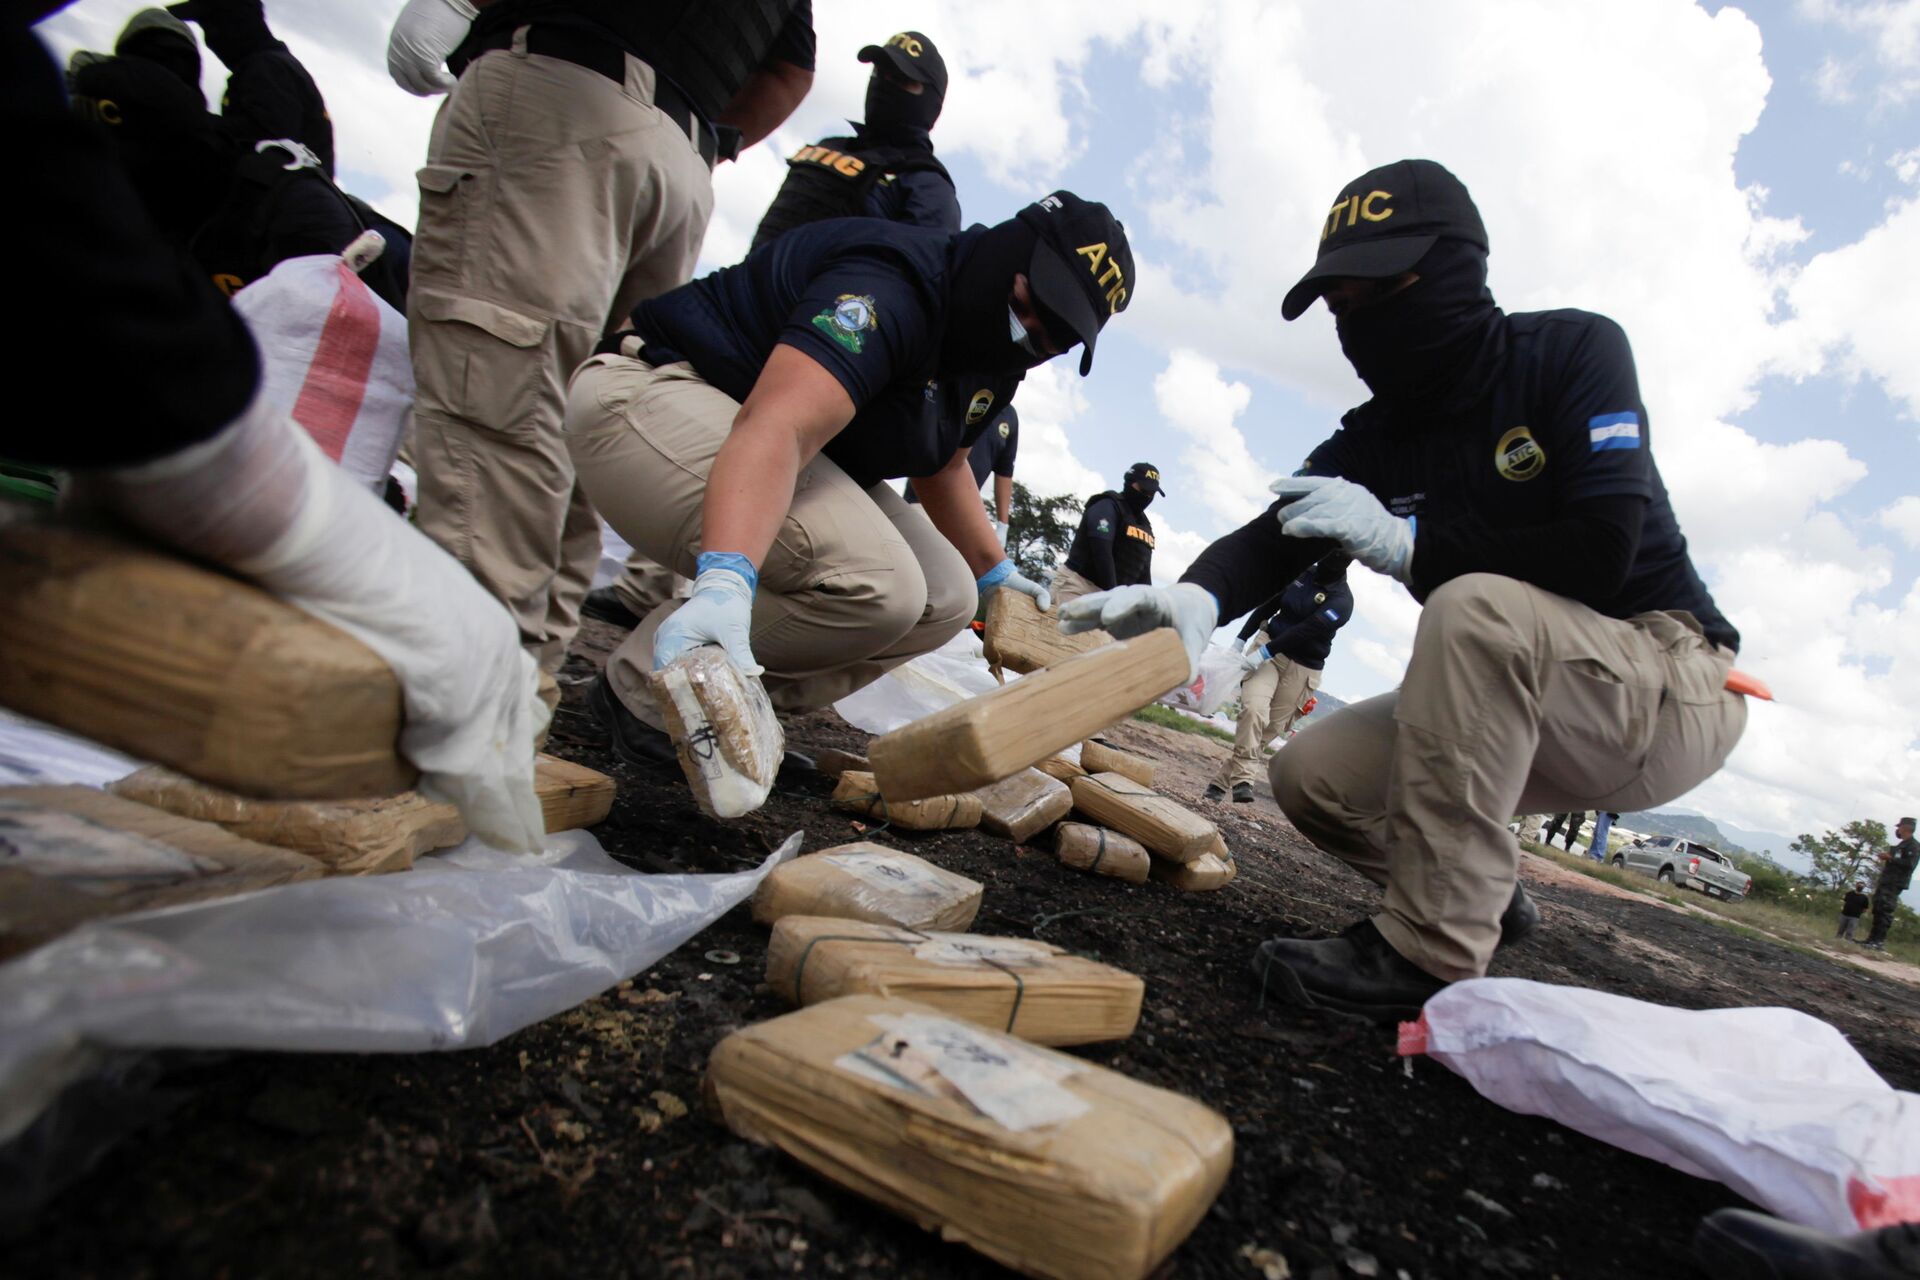 Agentes da Agência de Investigação Criminal Técnica recolhem pacotes de cocaína durante operações policiais no batalhão da Polícia Militar em Honduras - Sputnik Brasil, 1920, 09.11.2021